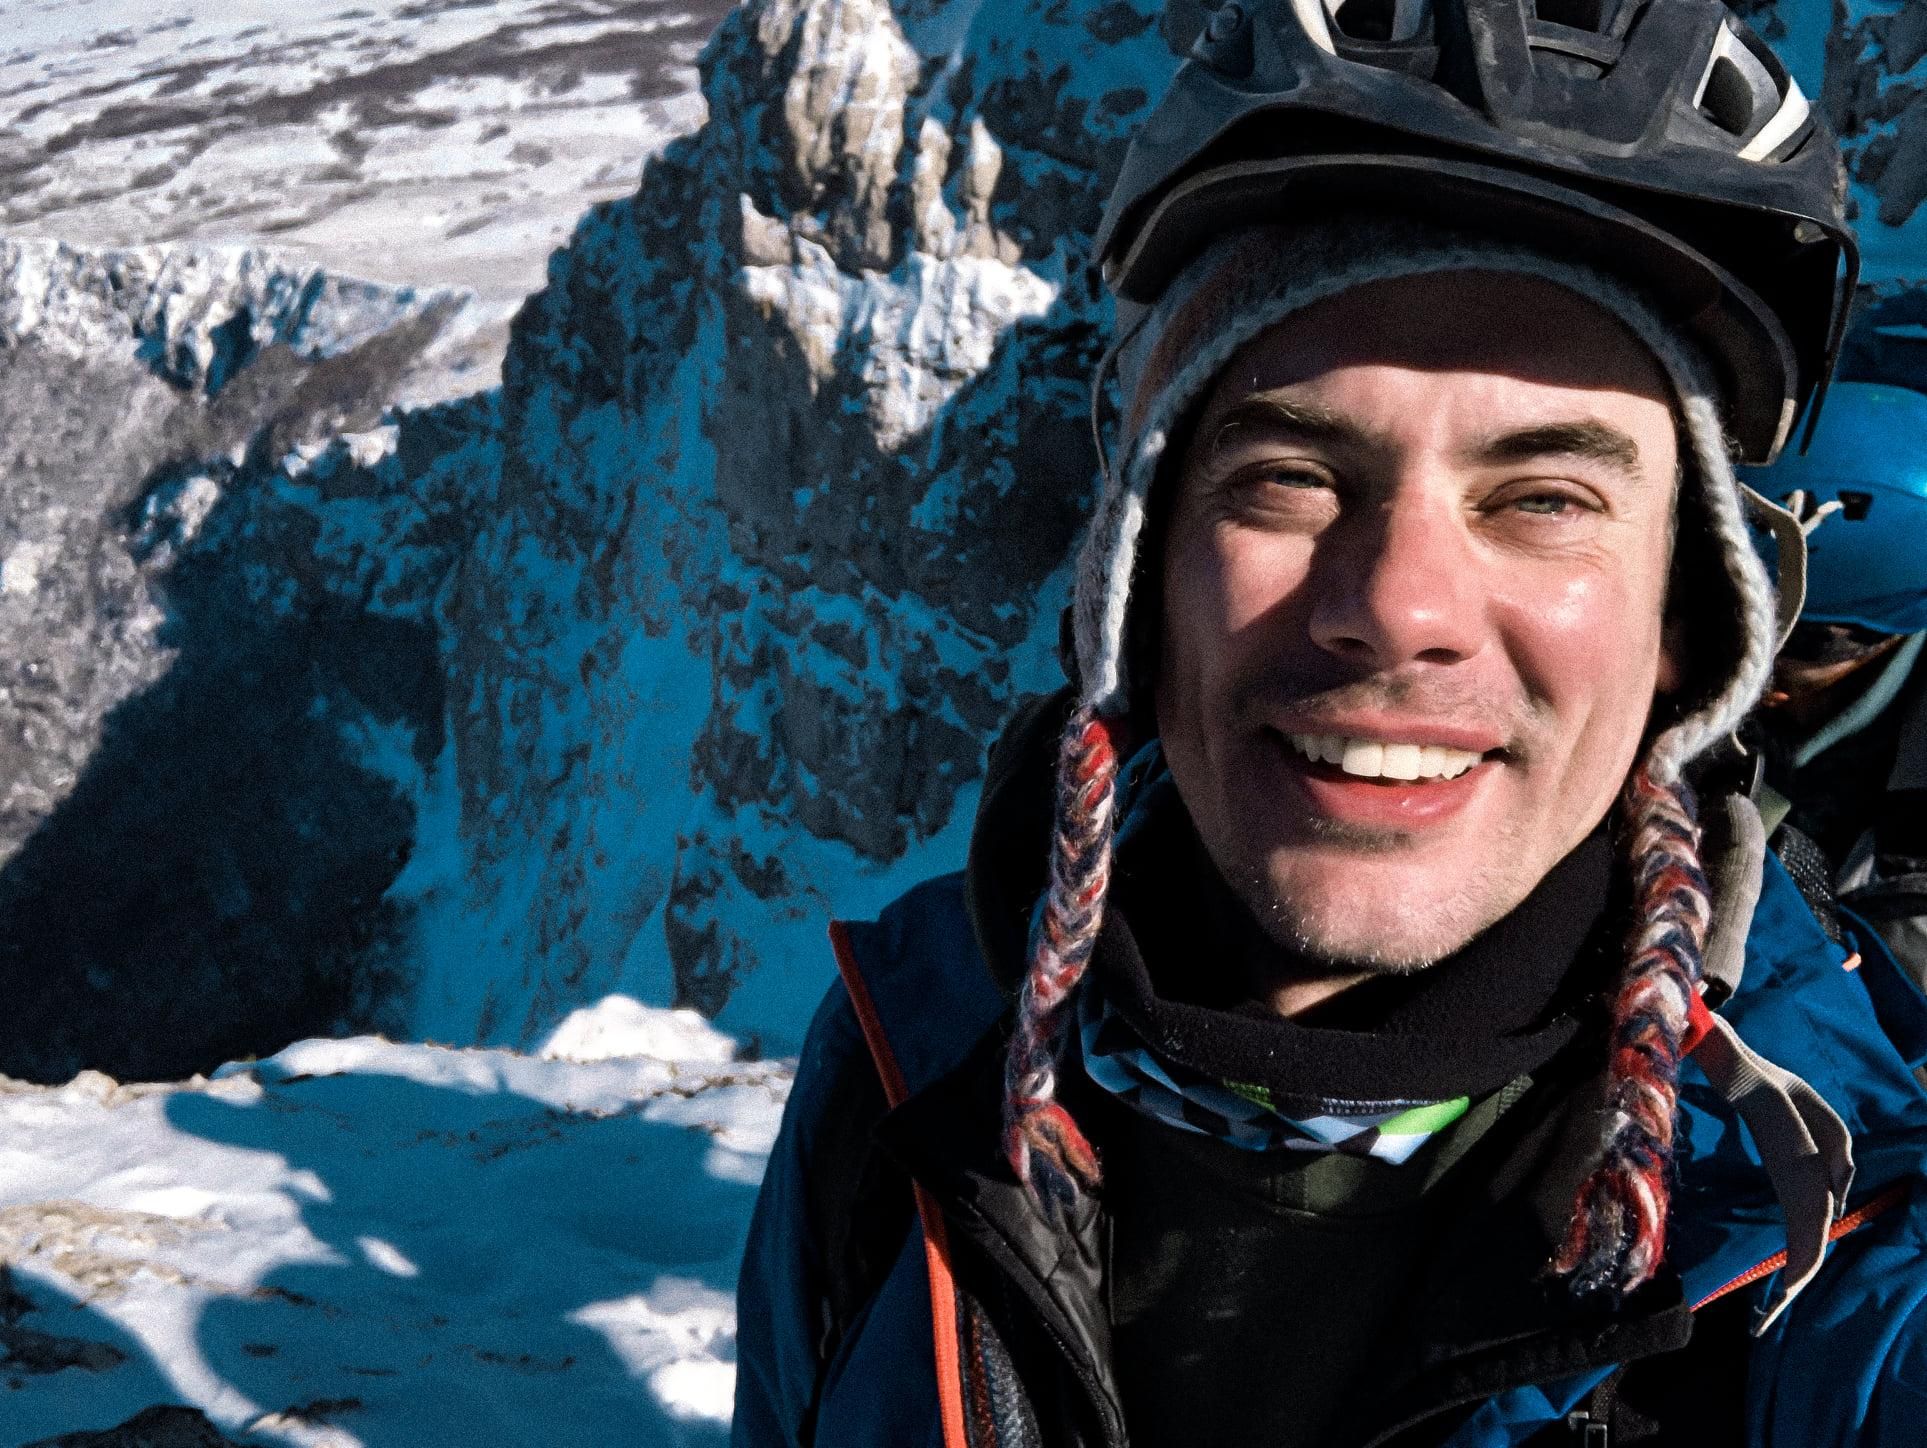 Інтерв'ю з альпіністом Григорієм Гришко про сходження на вершини